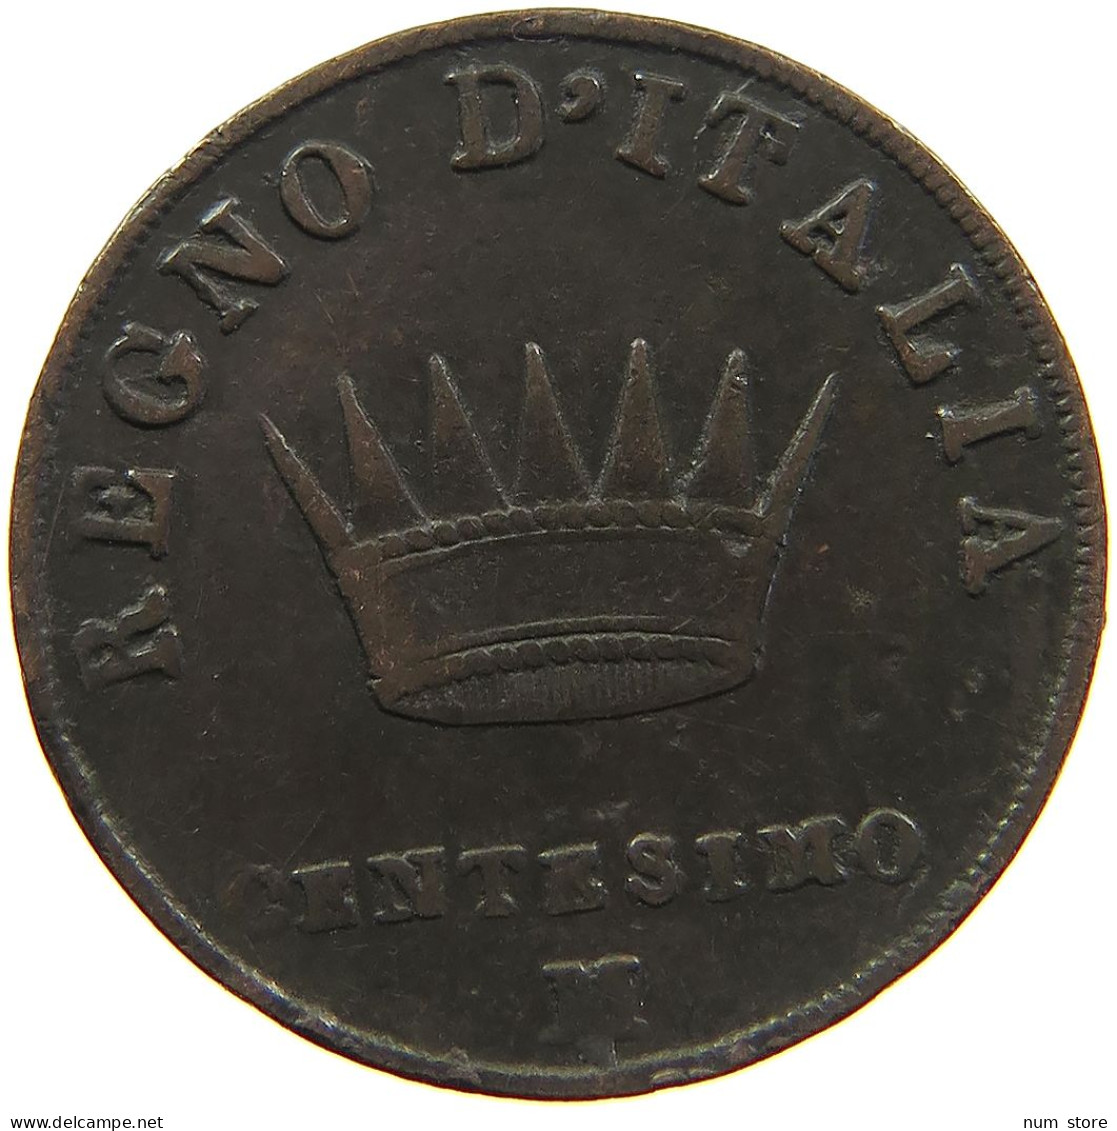 ITALY STATES CENTESIMO 1811 M/V NAPOLEON I. #s081 0593 - Napoleonic